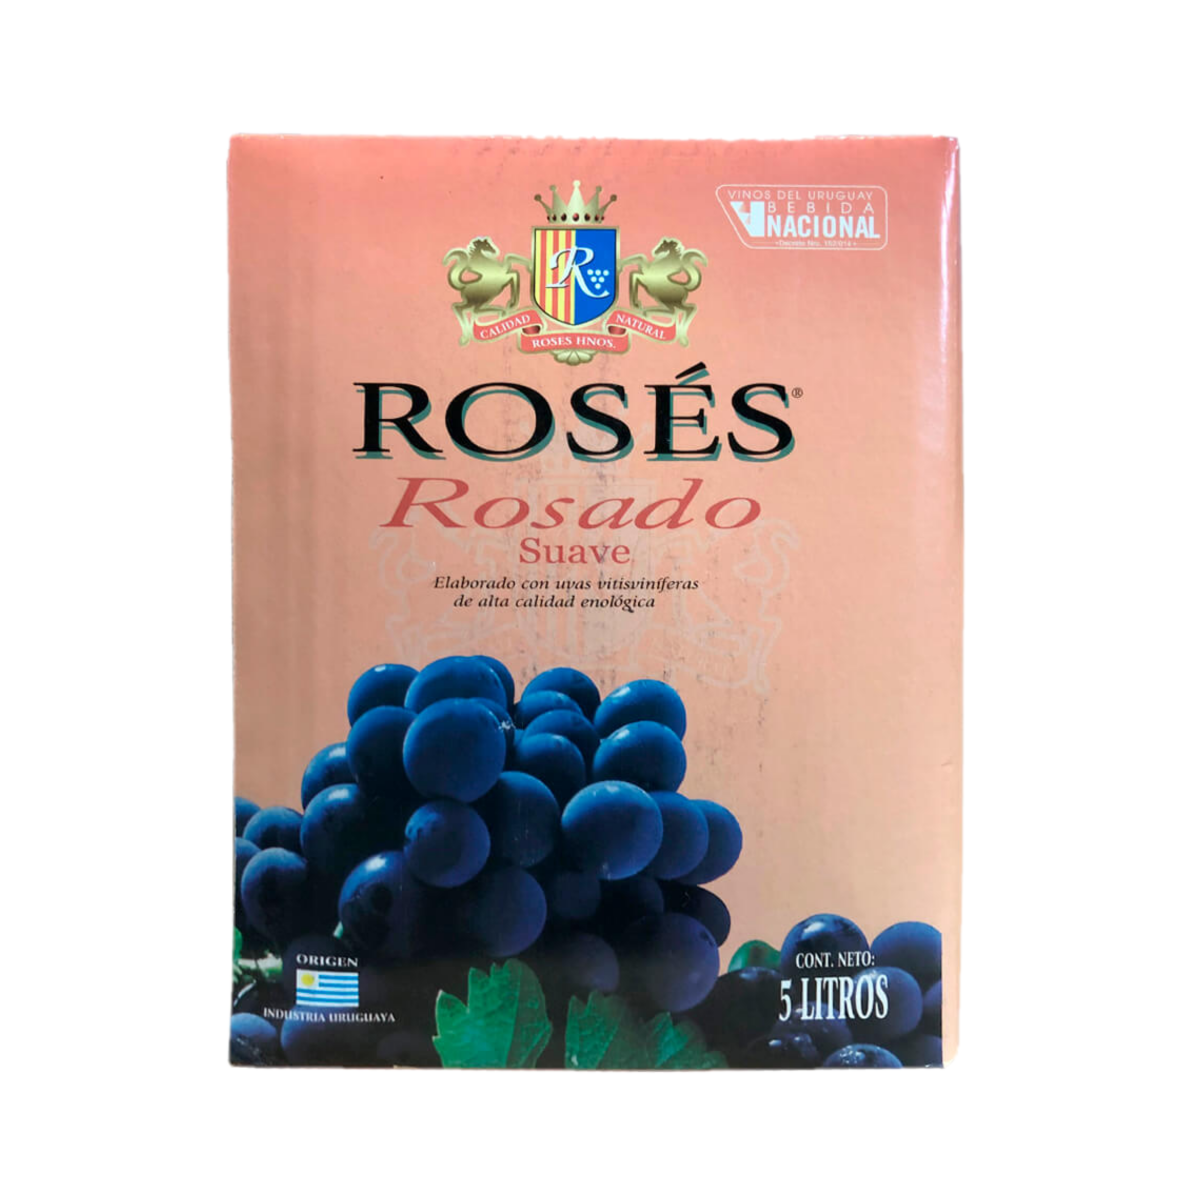 Vino Roses Rosado Bag in Box 5 L